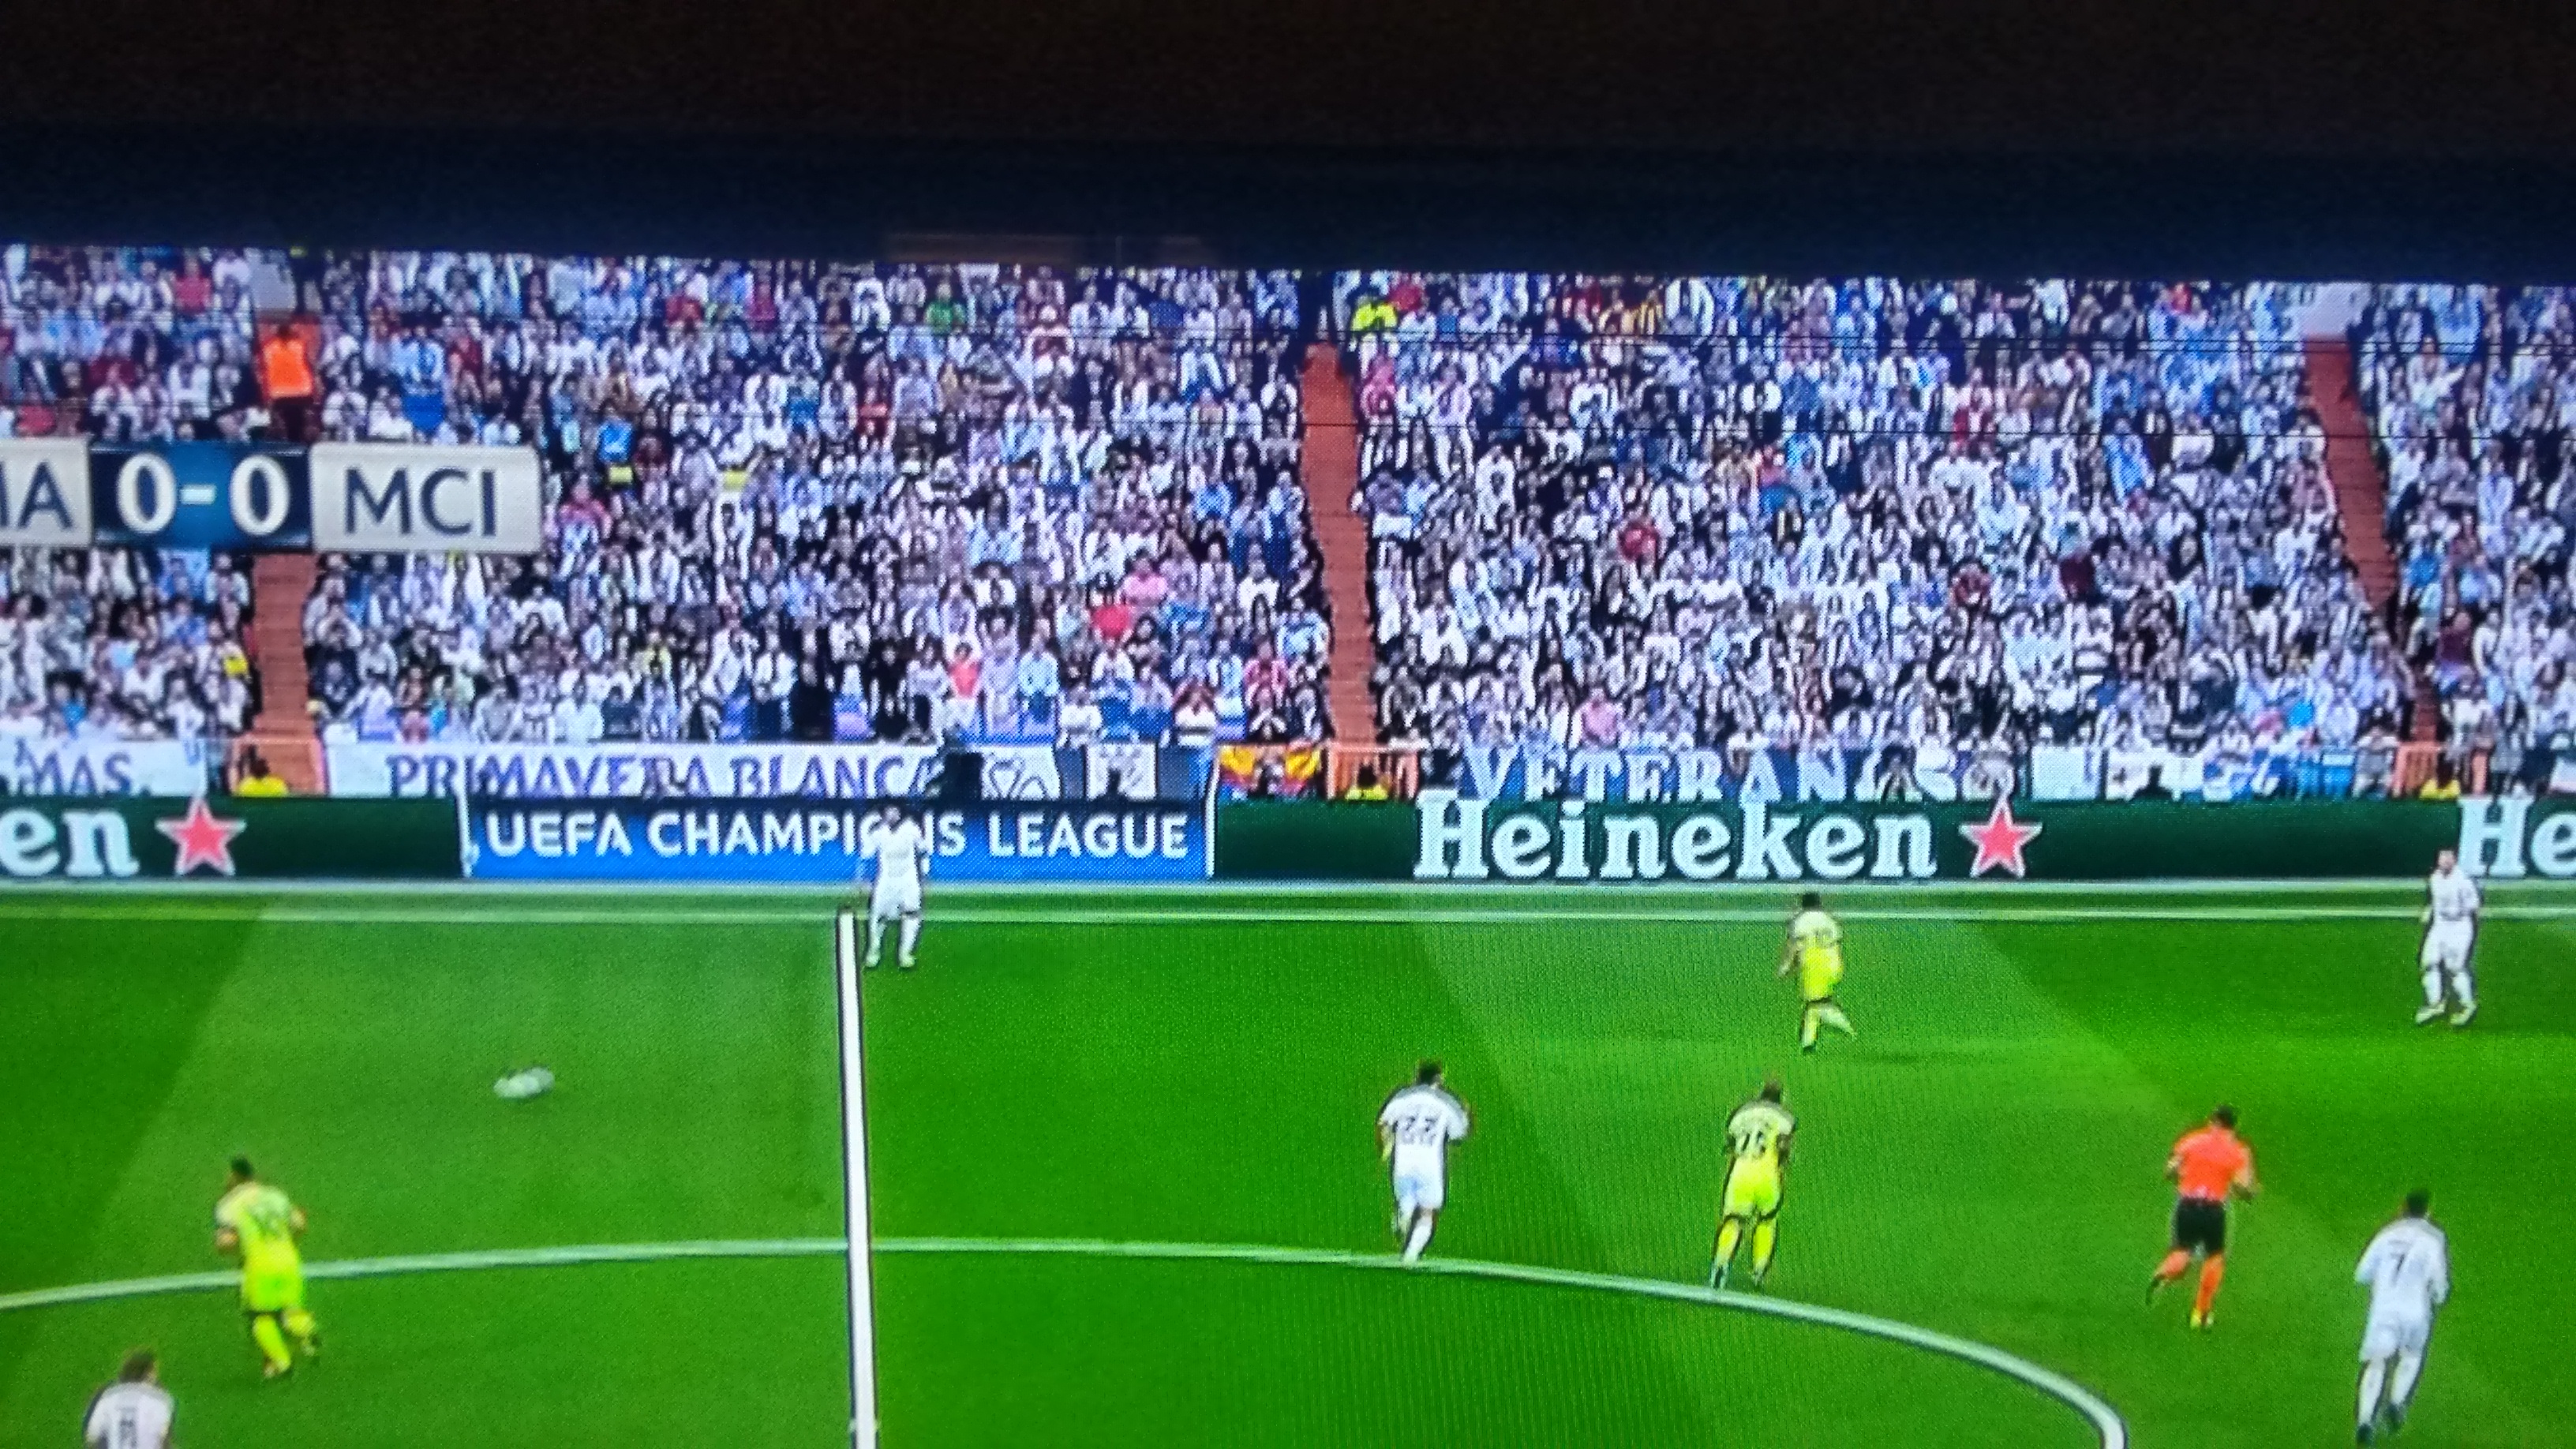 Bandeira do Corinthians no jogo do real Madri vs Manchester city